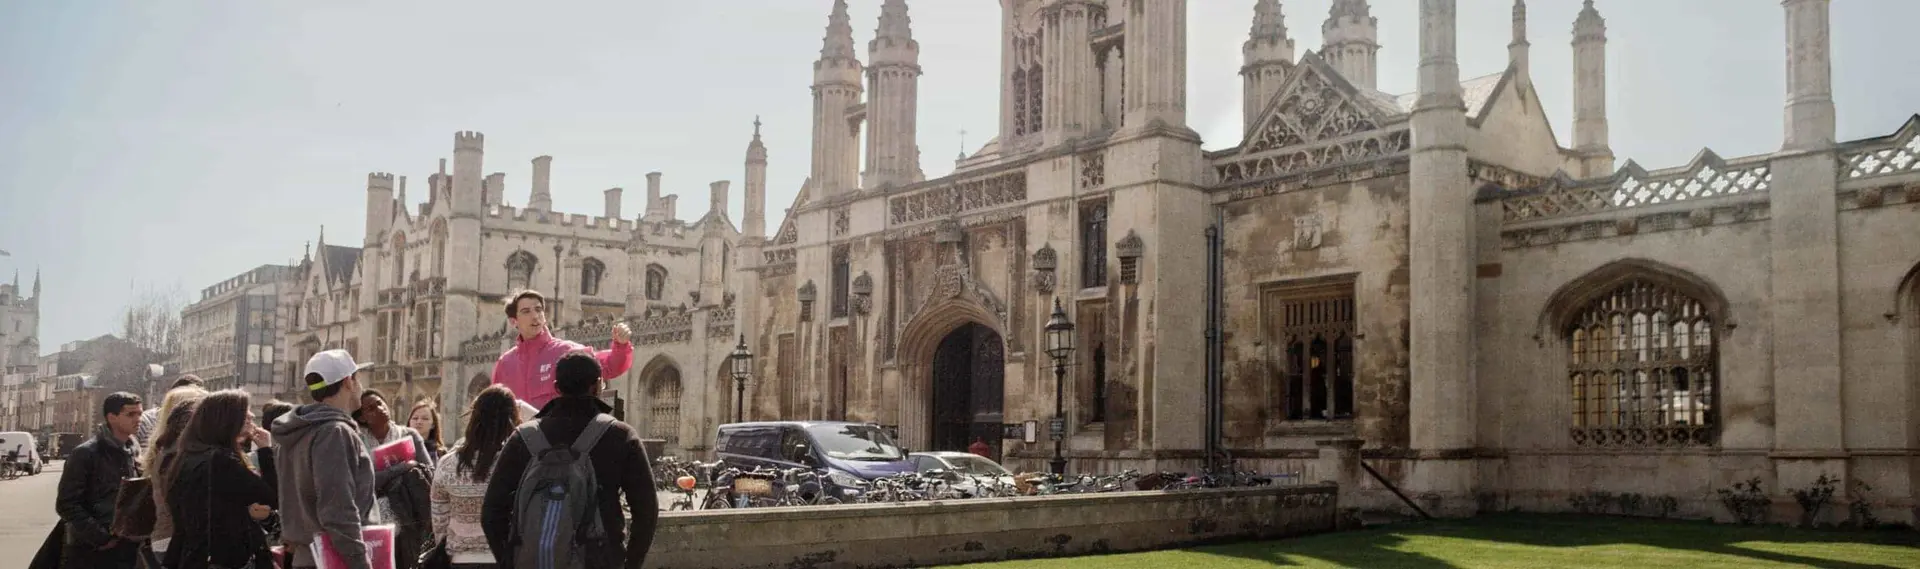 Cambridge - Clare College